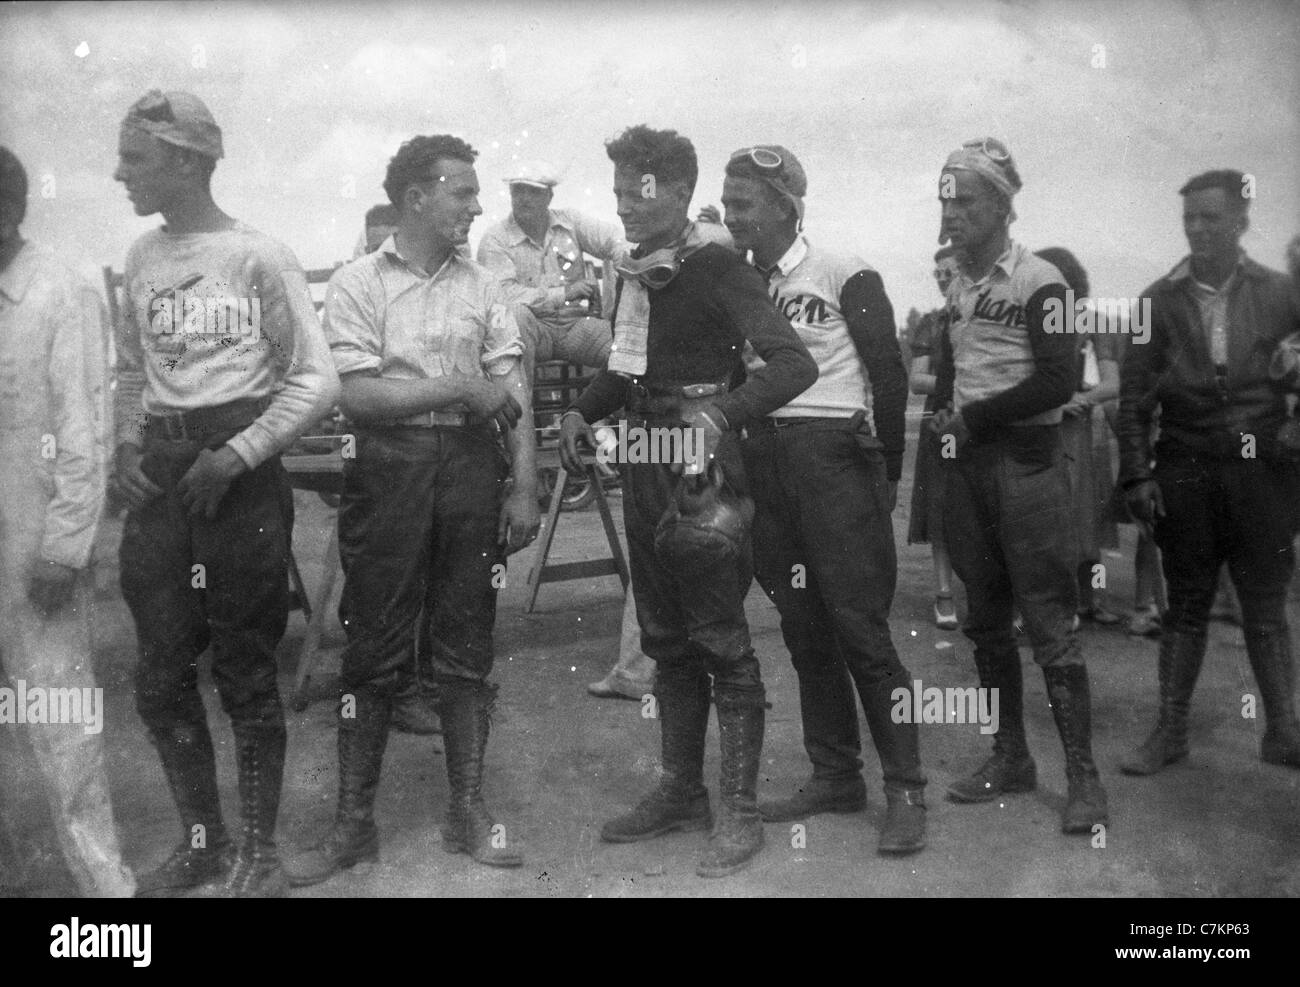 Moto de course 1930 Americana racers hommes men's fashion group groupe de jeunes mâles Banque D'Images